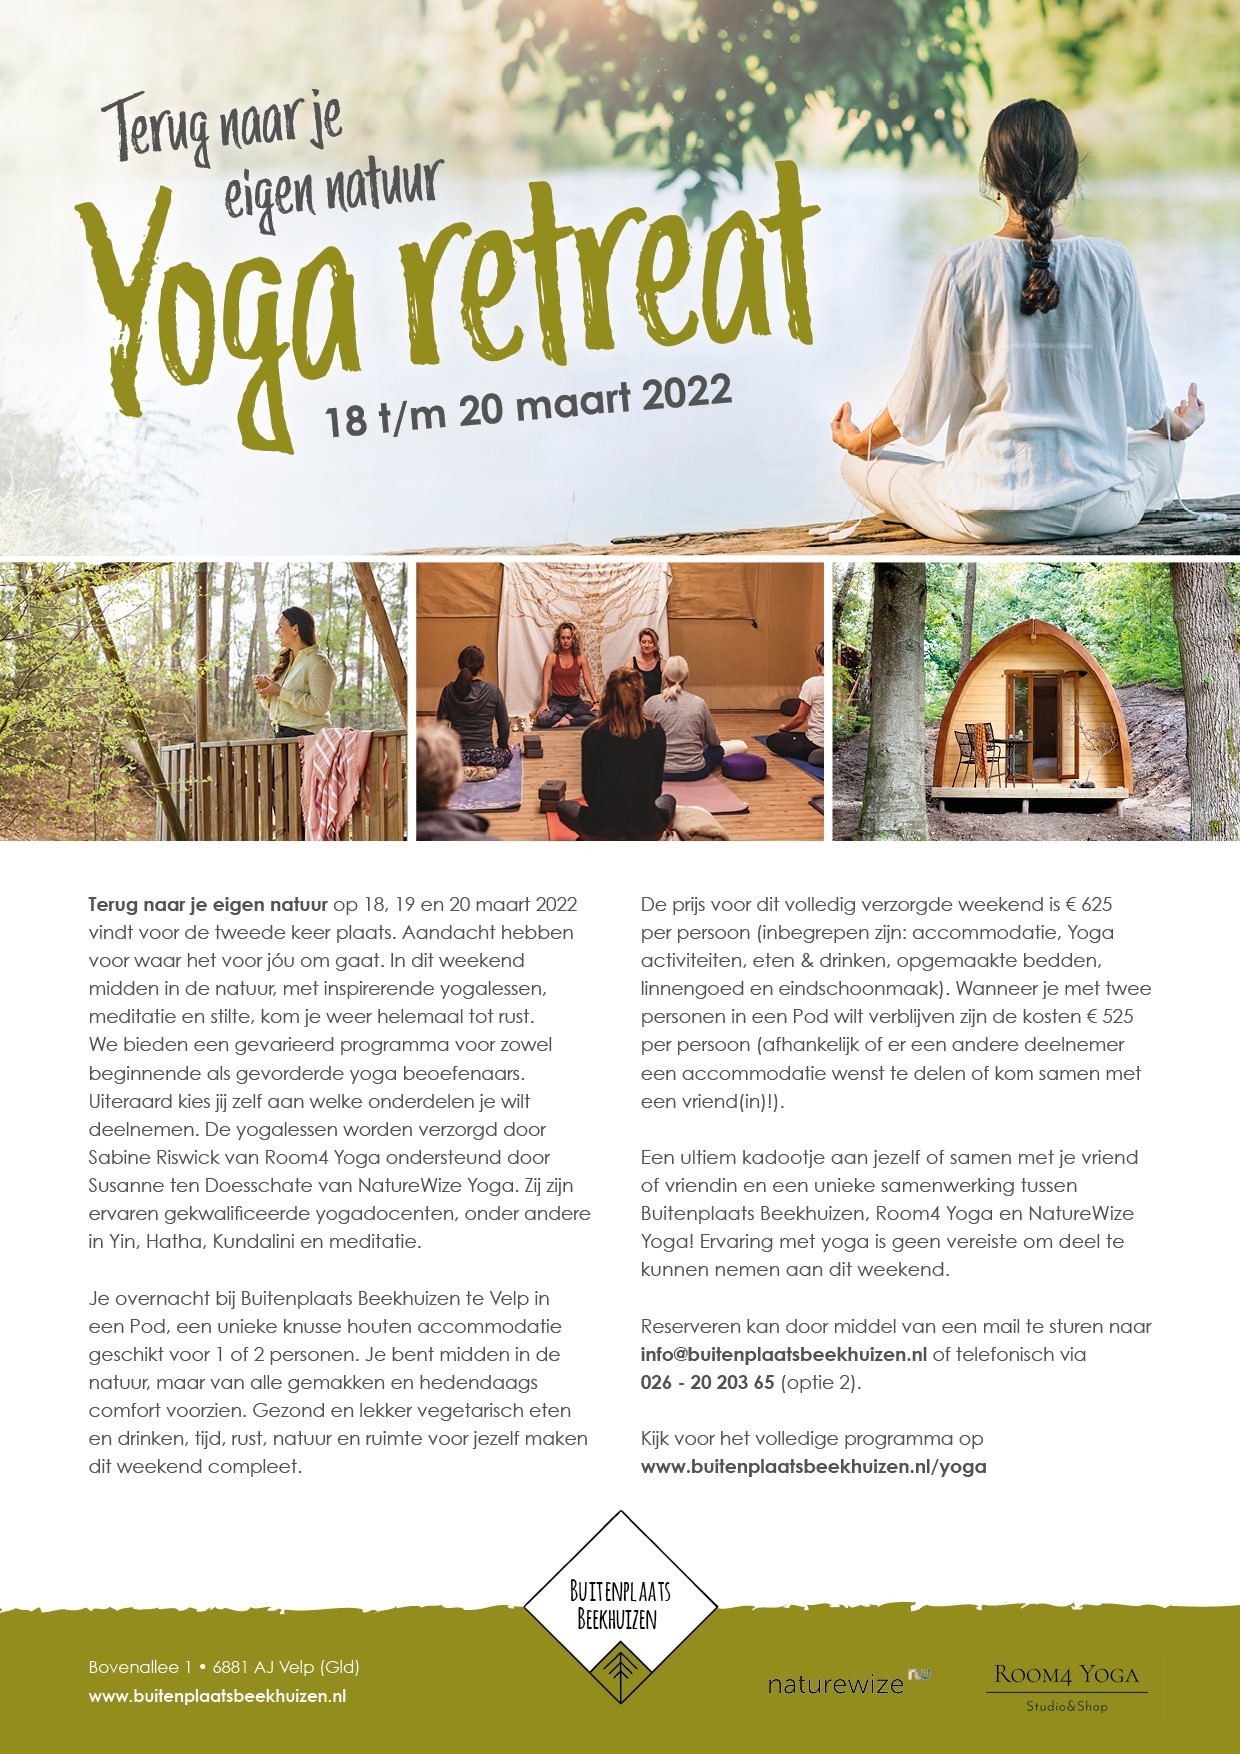 Terug naar jouw eigen natuur  met een Yoga retreat!